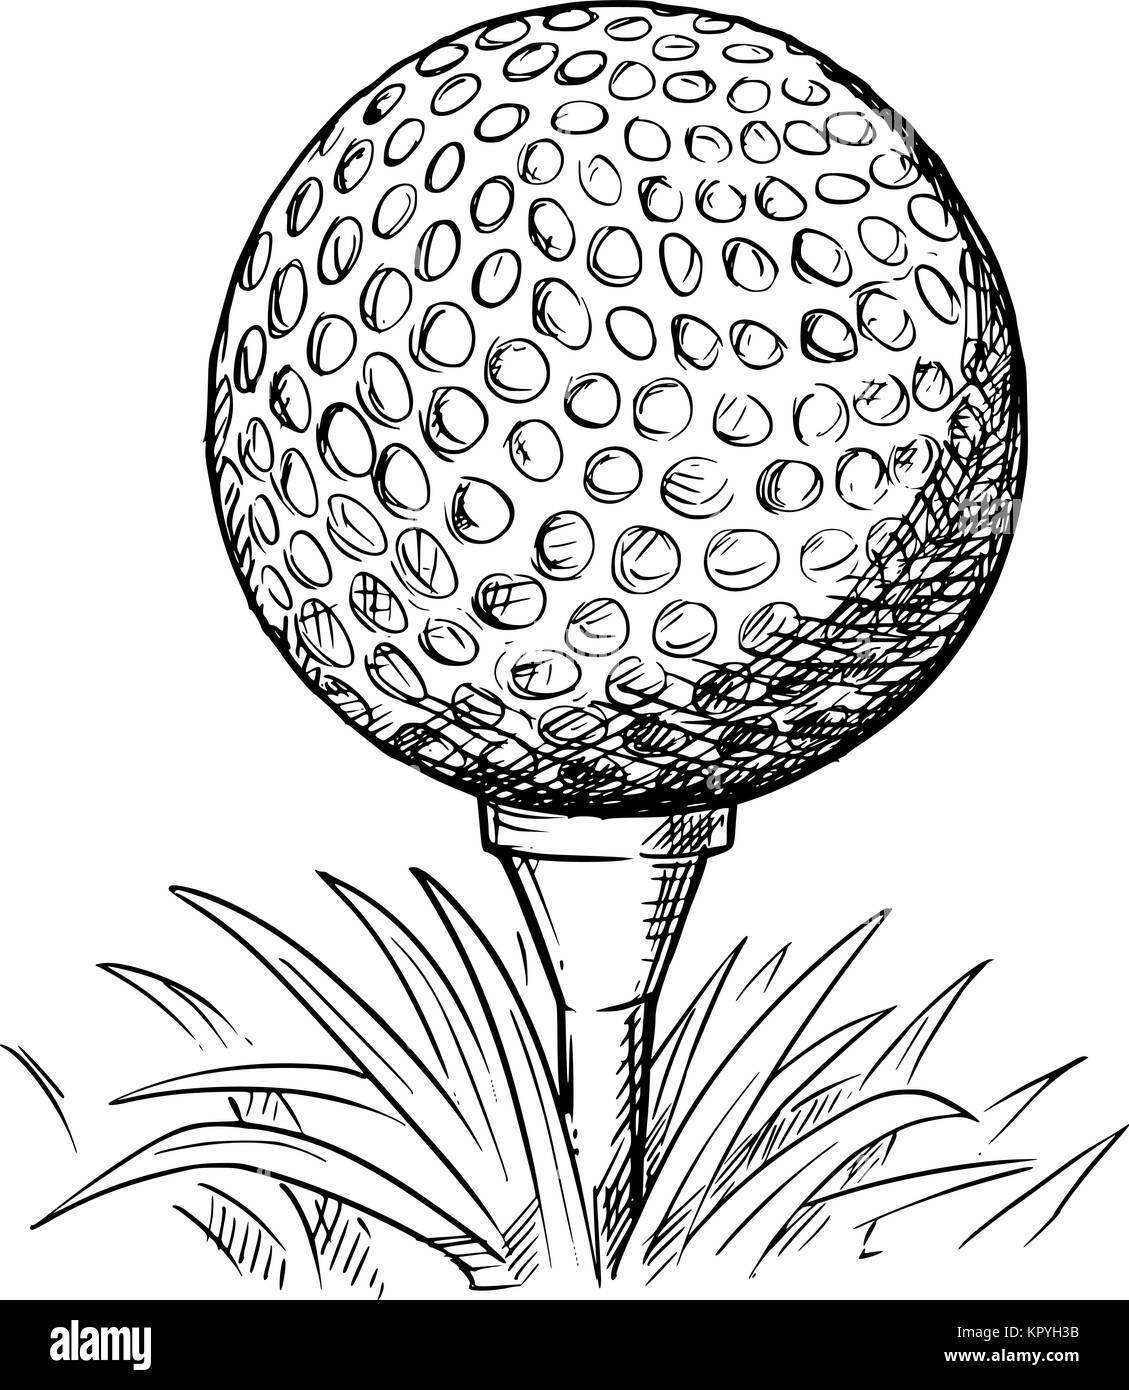 Vettore di disegno a mano disegnato illustrazione della pallina da golf sul raccordo a t e l'erba. Illustrazione Vettoriale